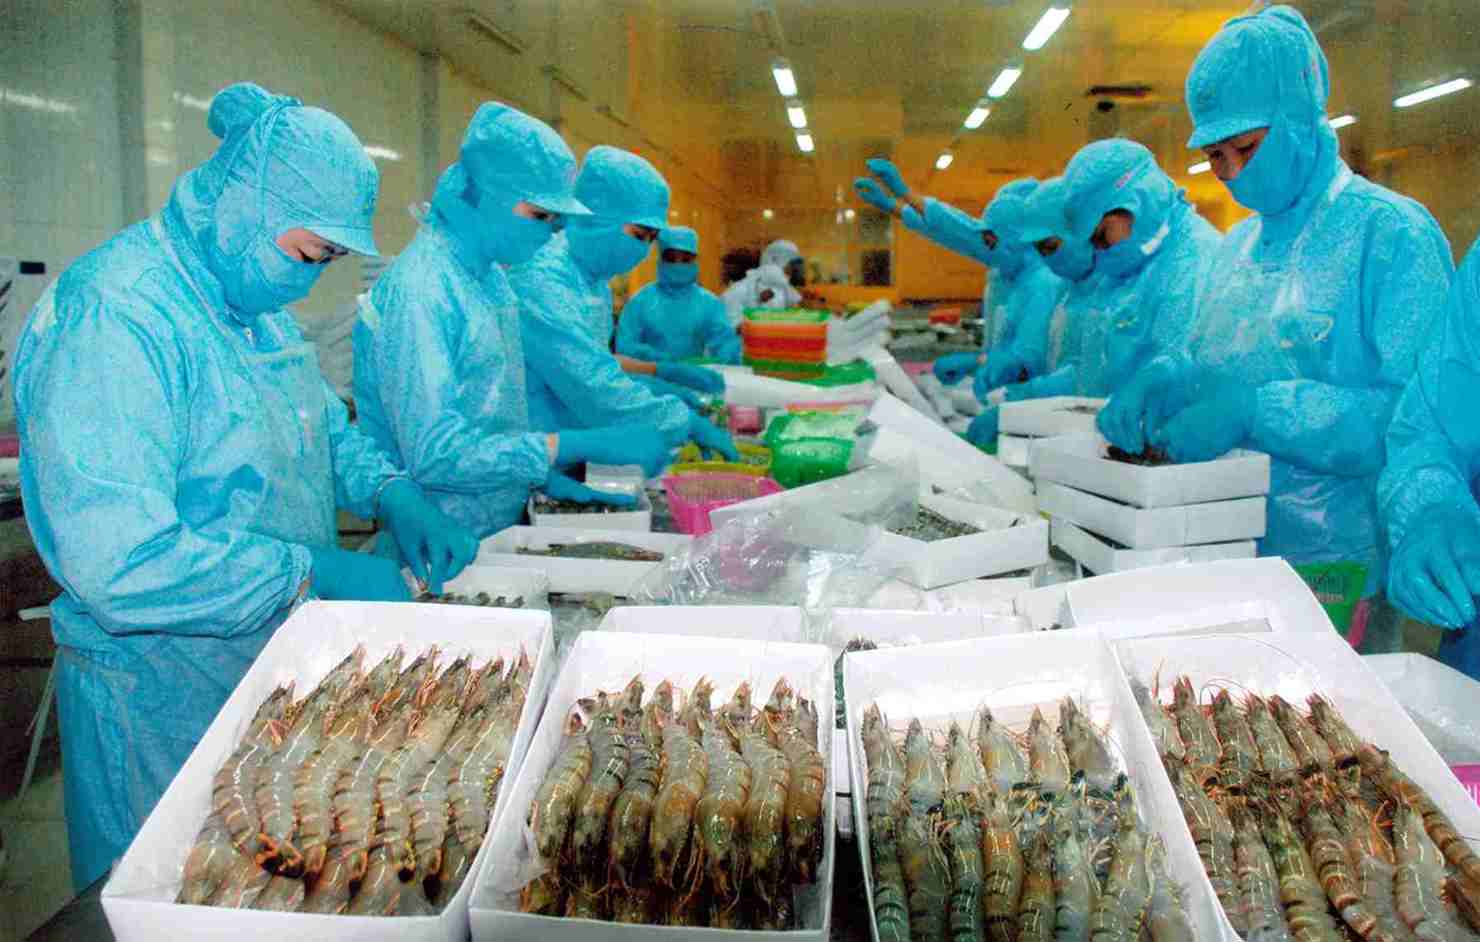 Phát triển sản xuất kinh doanh theo chuỗi là xu thế tất yếu trong thời gian tới đối với ngành thủy sản Việt Nam. Nguồn: internet